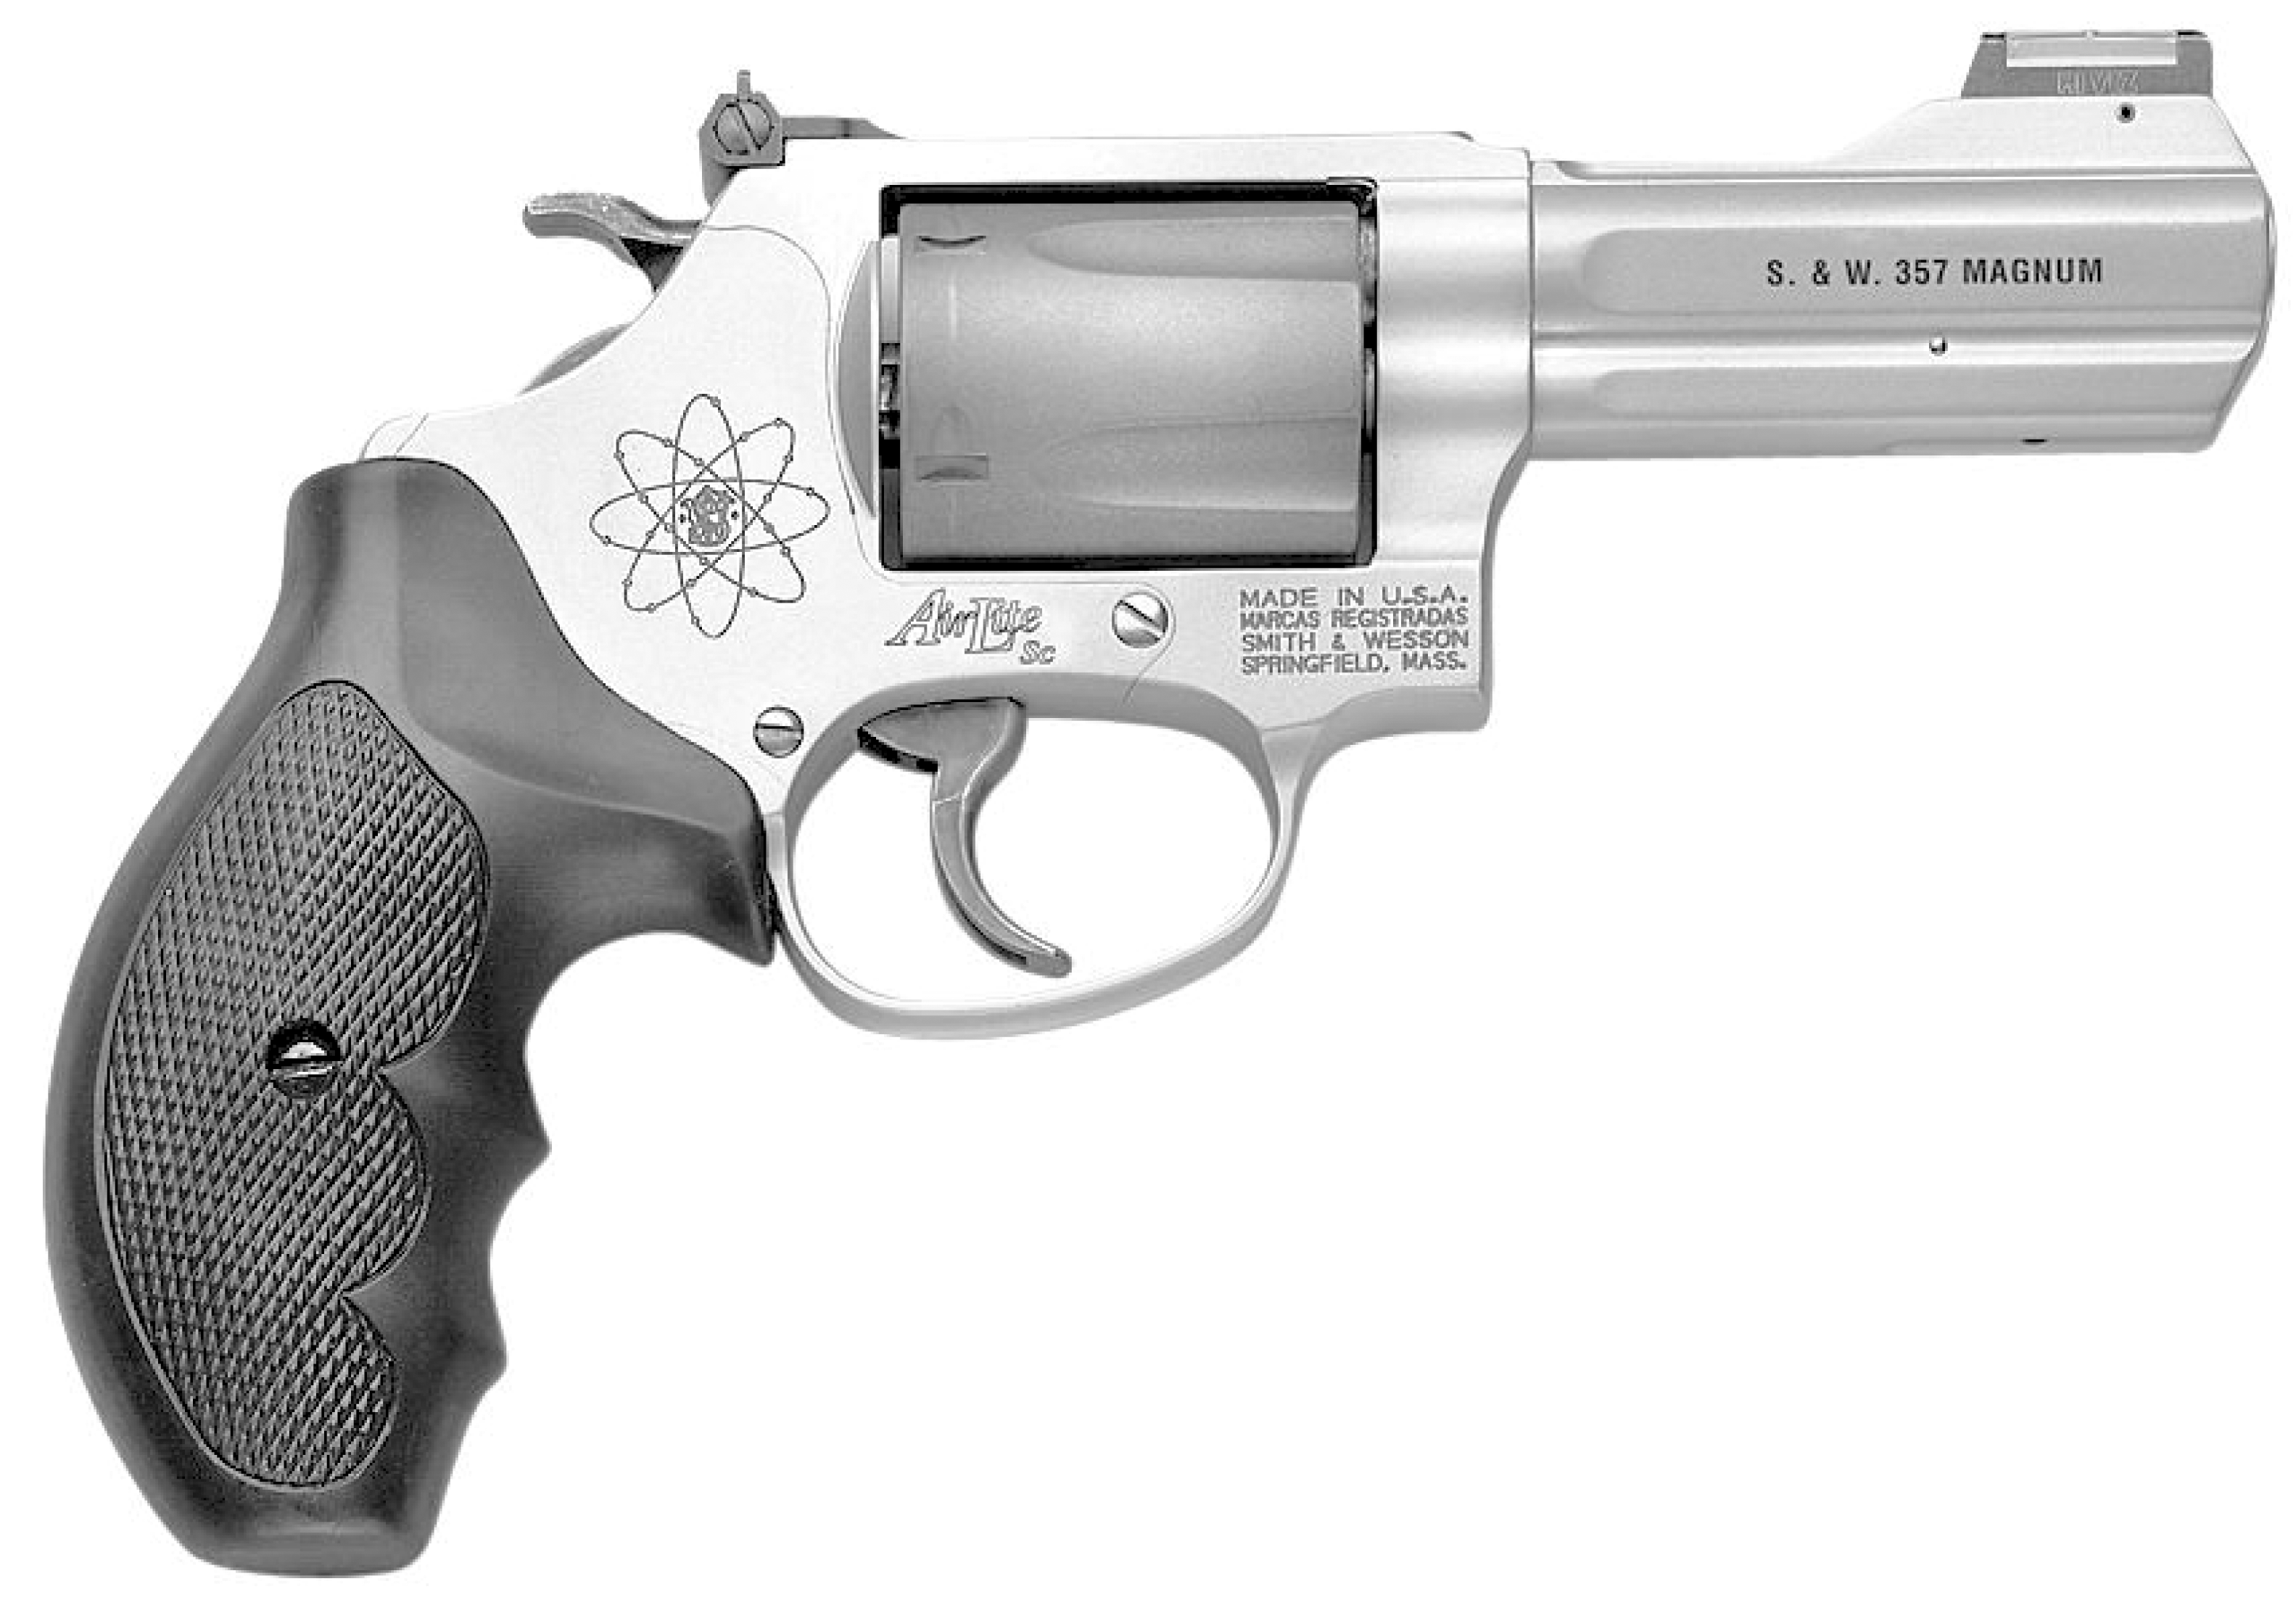 Model 360 Kit Gun